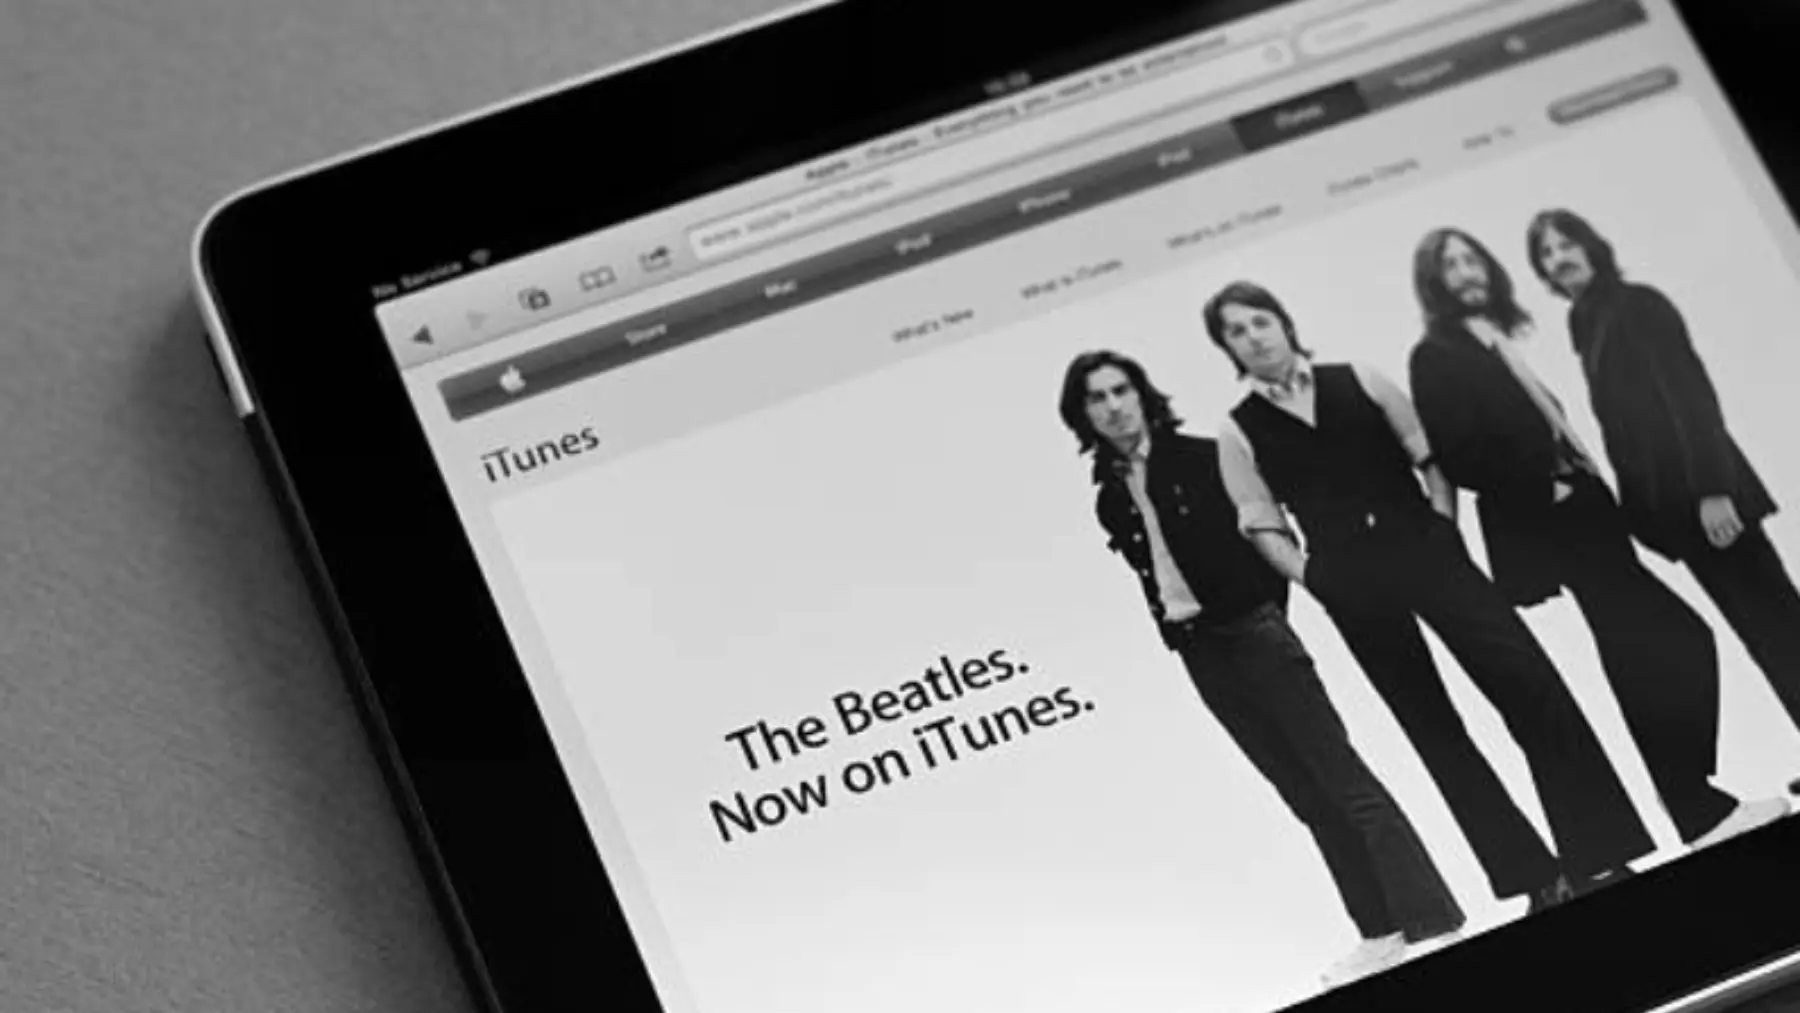 beatles tema con violines - Cuáles fueron las canciones más exitosas de los Beatles